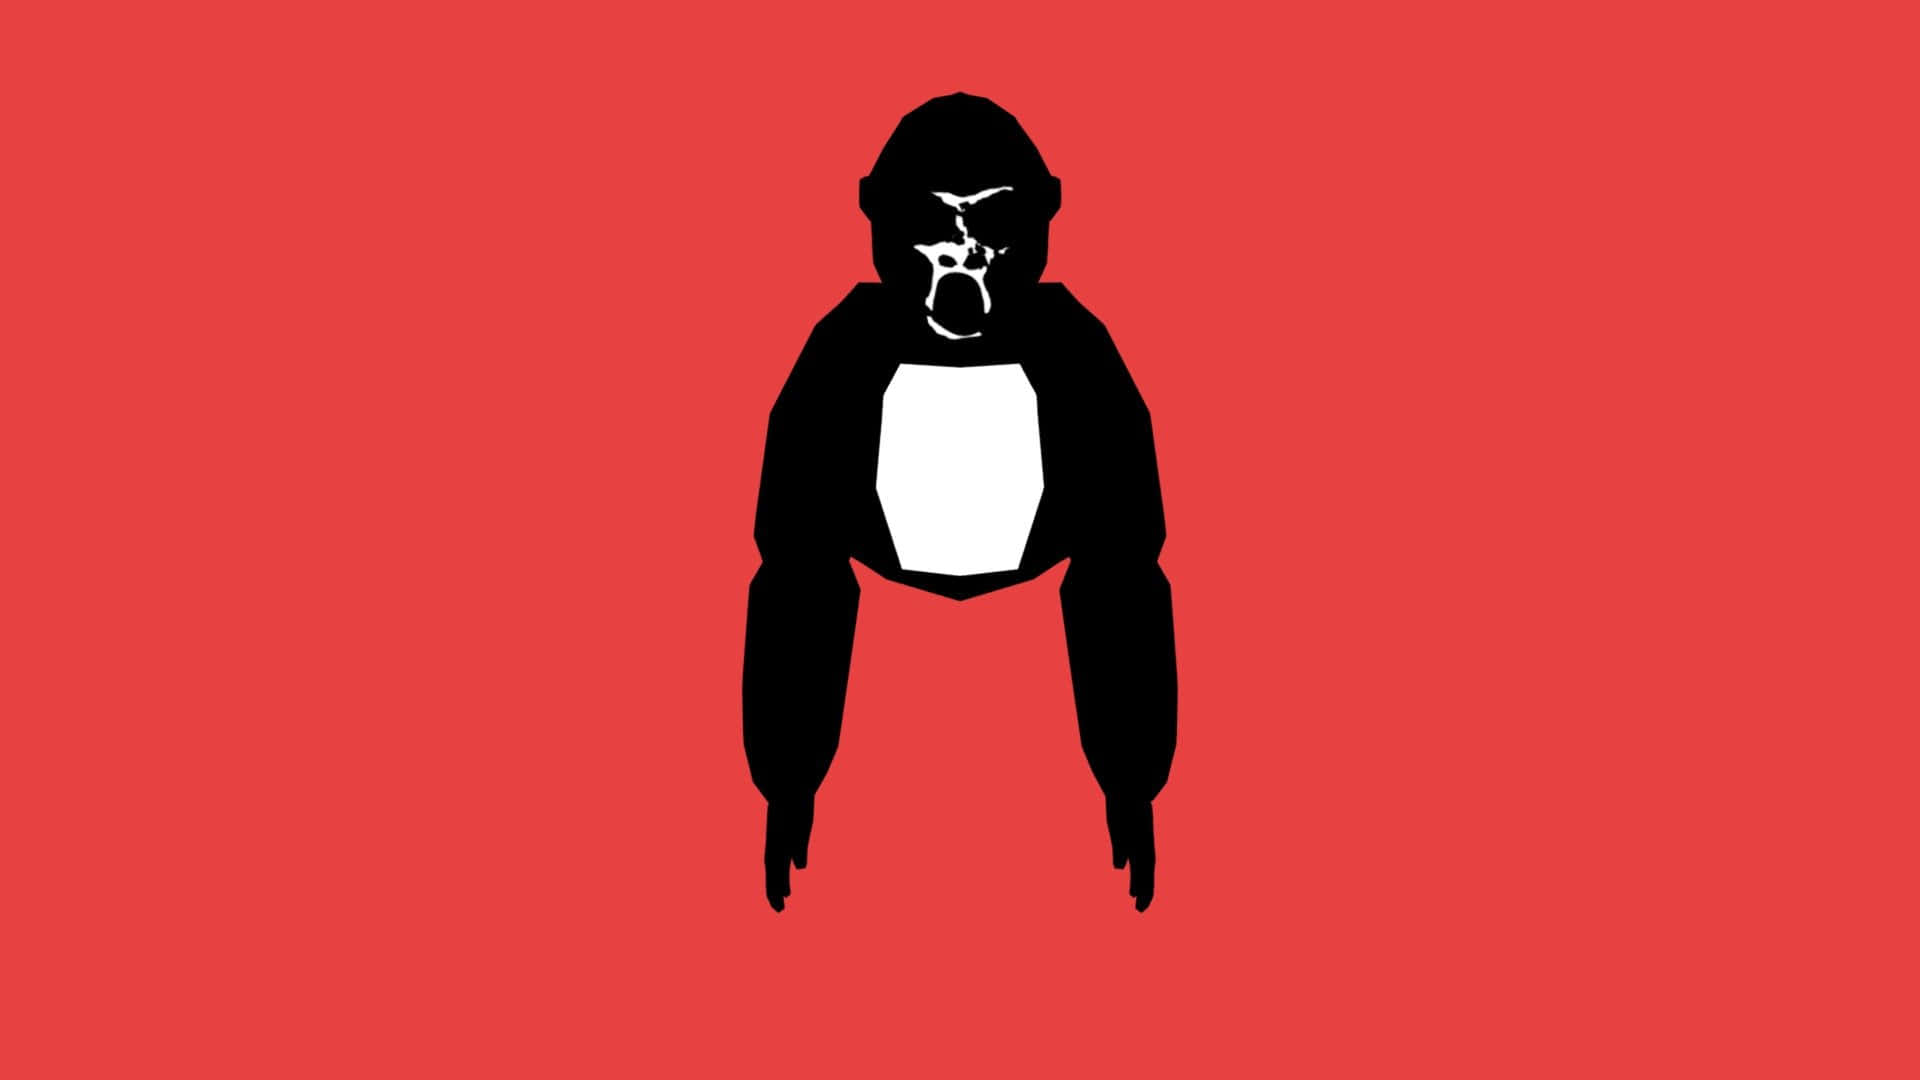 100+] Gorilla Tag Pictures